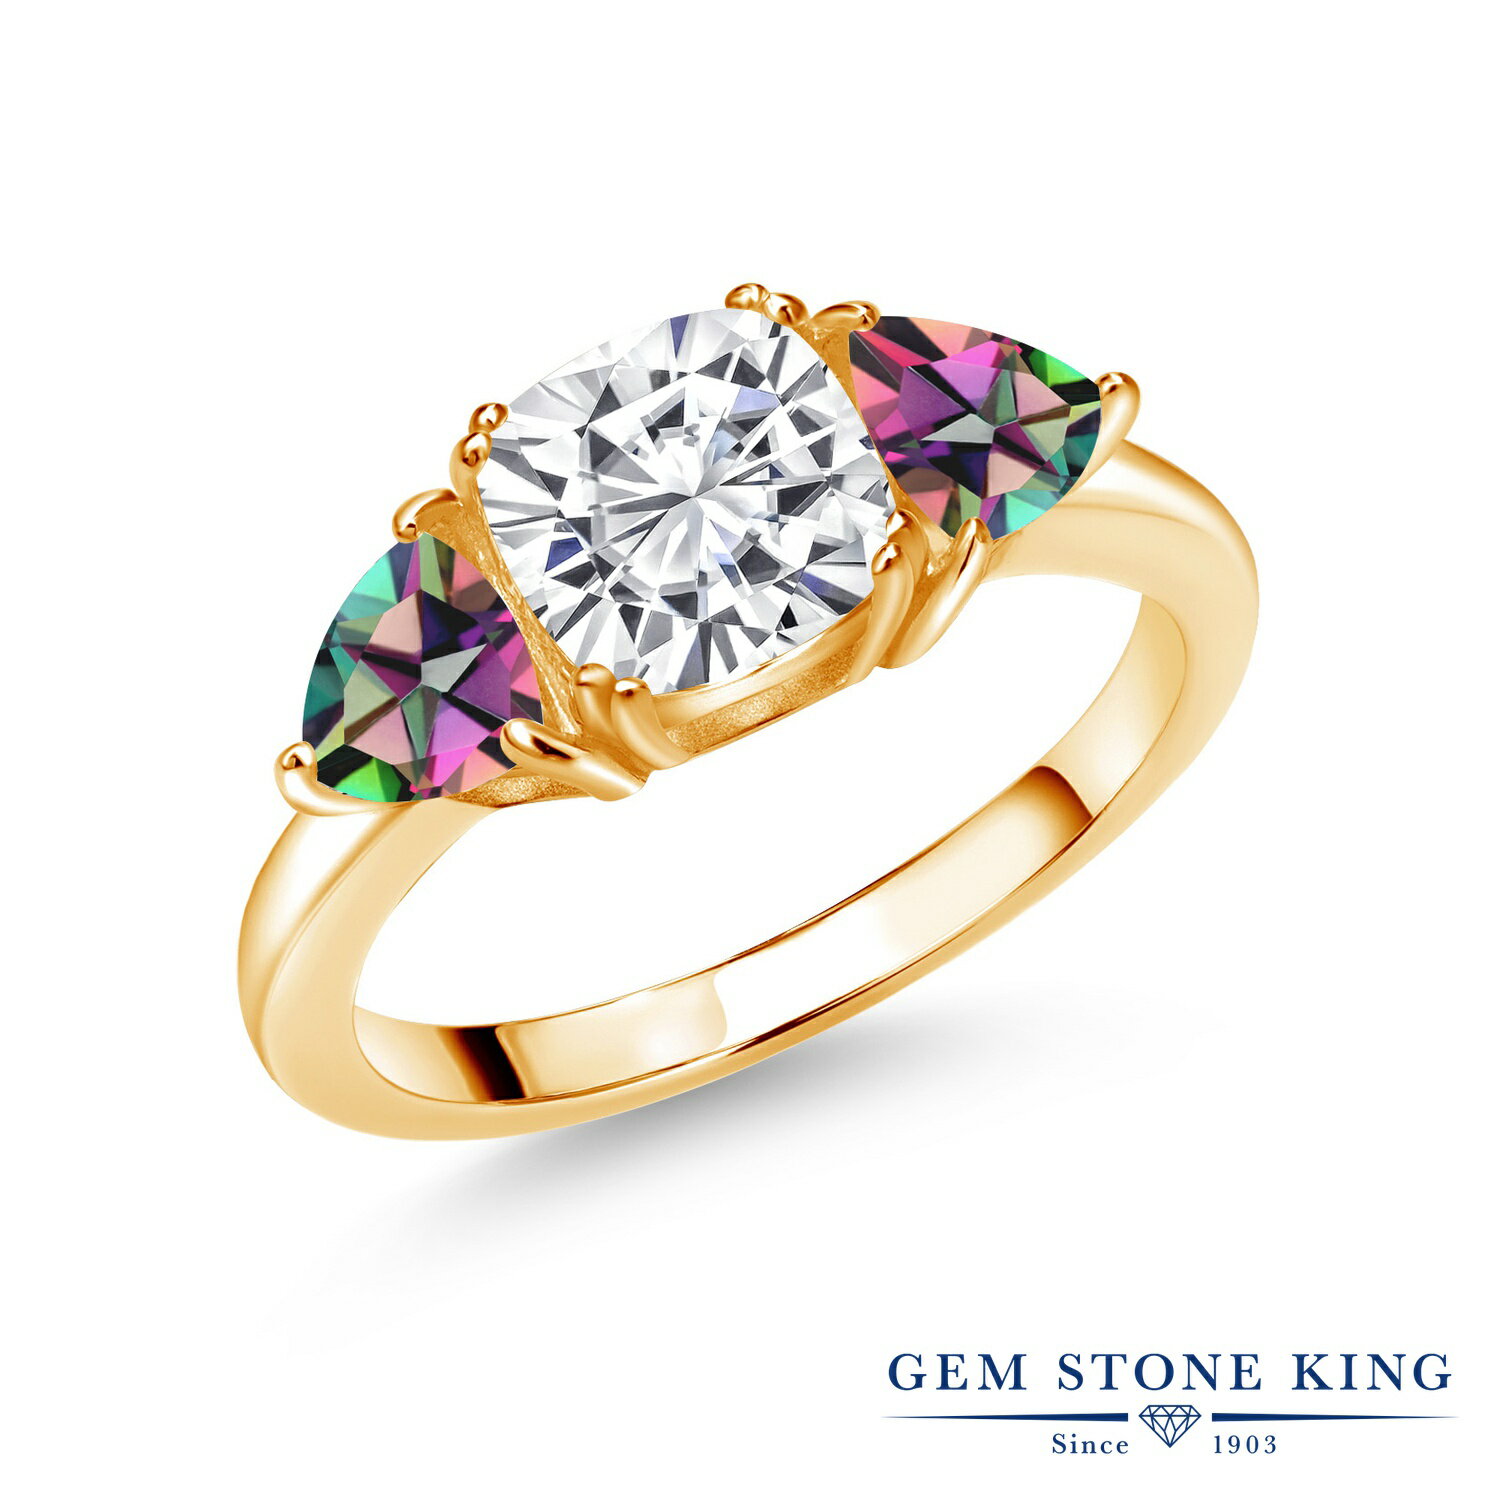 ブランドGem Stone King （ジェムストーンキング）商品名2.9カラット モアサナイト 指輪 リング レディース 天然石 ミスティックトパーズ (グリーン) シルバー925 イエローゴールドコーティング18K Yellow Gold Plated Silver Green Mystic Topaz 3Stone Engagement Ring Set with Created Moissanite by Gem Stone King 2.90 Cttwジェムストーン1.7カラット モアサナイト Near Colorless (GH) (7mm x 7mm)Gem Stone King Moissaniteクッション カット0.6カラット 天然 グリーン ミスティック トパーズ (5mm x 5mm) 総カラット数2.9カラット (合計 3粒)金属の素材シルバー イエローゴールドコーティング 刻印入り金属アレルギーフリー ニッケルフリーセッティングプロング(爪留め) セッティング付属品ジュエリーボックス・品質保証カード・手さげバッグ品番VIV-0221-CS-CMS-GM-MT-GR-YPSSモアサナイト Moissanite について天然ダイヤモンドの数倍輝くと言われている世界で最も輝く鉱石モアサナイト（別名：モアッサナイト）。無色透明であり、ダイヤモンドと硬度がほぼ同じで耐久性が非常に高いモアサナイトは、世界が注目する次世代の最先端の宝石。ダイヤモンドは皮脂との親和性が高く曇りやすいのですが、モアサナイトは親和性が低く素晴らしい輝きが持続します。米国では、ダイヤモンドよりも輝き、約10分の1の価格で購入できるモアサナイトが婚約指輪・結婚指輪としても非常に支持されています。Gem Stone King（ジェムストーンキング）創業115年を超える、世界が認める「天然石の王」定番からトレンドまでおしゃれなデザインが世界的に人気のジュエリーブランド高品質の天然石をお求め安い価格で販売！海外「ニューヨーク」から直接お届けしております● 普段使いやご褒美に20代、30代、40代、50代と幅広い年代の大人の女性にぴったり似合う贅沢な高級感デイリーに、オフィス カジュアルに、お呼ばれなどのフォーマルにも使える、上品できれいめなデザイン● 大切な女性（妻、嫁、彼女）へのプレゼントに結婚・婚約、結婚記念日、誕生日プレゼント、夫婦の記念日にクリスマス、ホワイトデー、バレンタインデー、母の日のギフトに仲良しな女友達へのサプライズギフトに還暦のお祝い、成人・入学・卒業のお祝いの贈り物にもおすすめ● 幸運のお守りにパワーストーンとしても人気の宝石たちは、お守りとしても世界中で愛用されています＊ GemStoneKingの正規品、生涯保証でお修理も可＊ 金属アレルギーフリー ニッケルフリーで安心Gem Stone King モアサナイトシルバー イエローゴールドコーティング スリーストーンリング1.7カラットのモアサナイトとシルバー イエローゴールドコーティングでお作りするスリーストーンスリーストーンリング。ゴールドとシルバーのツートンカラーがスタイリッシュに大人のクラス感をアップ。ミスティック トパーズをアクセントストーンに添えた、魅力的なカラーコンビネーションがおしゃれなジュエリー。宝石を高い位置にキープし輝きを最大限に引き出すプロング(爪留め)セッティングがモアサナイトをより美しく鮮やかに引き立たせます。エンゲージリング・マリッジリングに最適です。20代、30代、40代、50代と幅広い年代にぴったり似合う、上品で贅沢な高級感がおすすめです。普段使いや特別な装いに、シーンを選ばずお使いいただけます。ブランドGem Stone King （ジェムストーンキング）商品名2.9カラット モアサナイト 指輪 リング レディース 天然石 ミスティックトパーズ (グリーン) シルバー925 イエローゴールドコーティングジェムストーン1.7カラット モアサナイト Near Colorless (GH) (7mm x 7mm)Gem Stone King Moissaniteクッション カット0.6カラット 天然 グリーン ミスティック トパーズ (5mm x 5mm) 総カラット数2.9カラット (合計 3粒)金属の素材シルバー イエローゴールドコーティング 刻印入り金属アレルギーフリー ニッケルフリーセッティングプロング(爪留め) セッティング付属品ジュエリーボックス・品質保証カード・手さげバッグ品番VIV-0221-CS-CMS-GM-MT-GR-YPSSモアサナイト リング で探す人気ランキングから探す